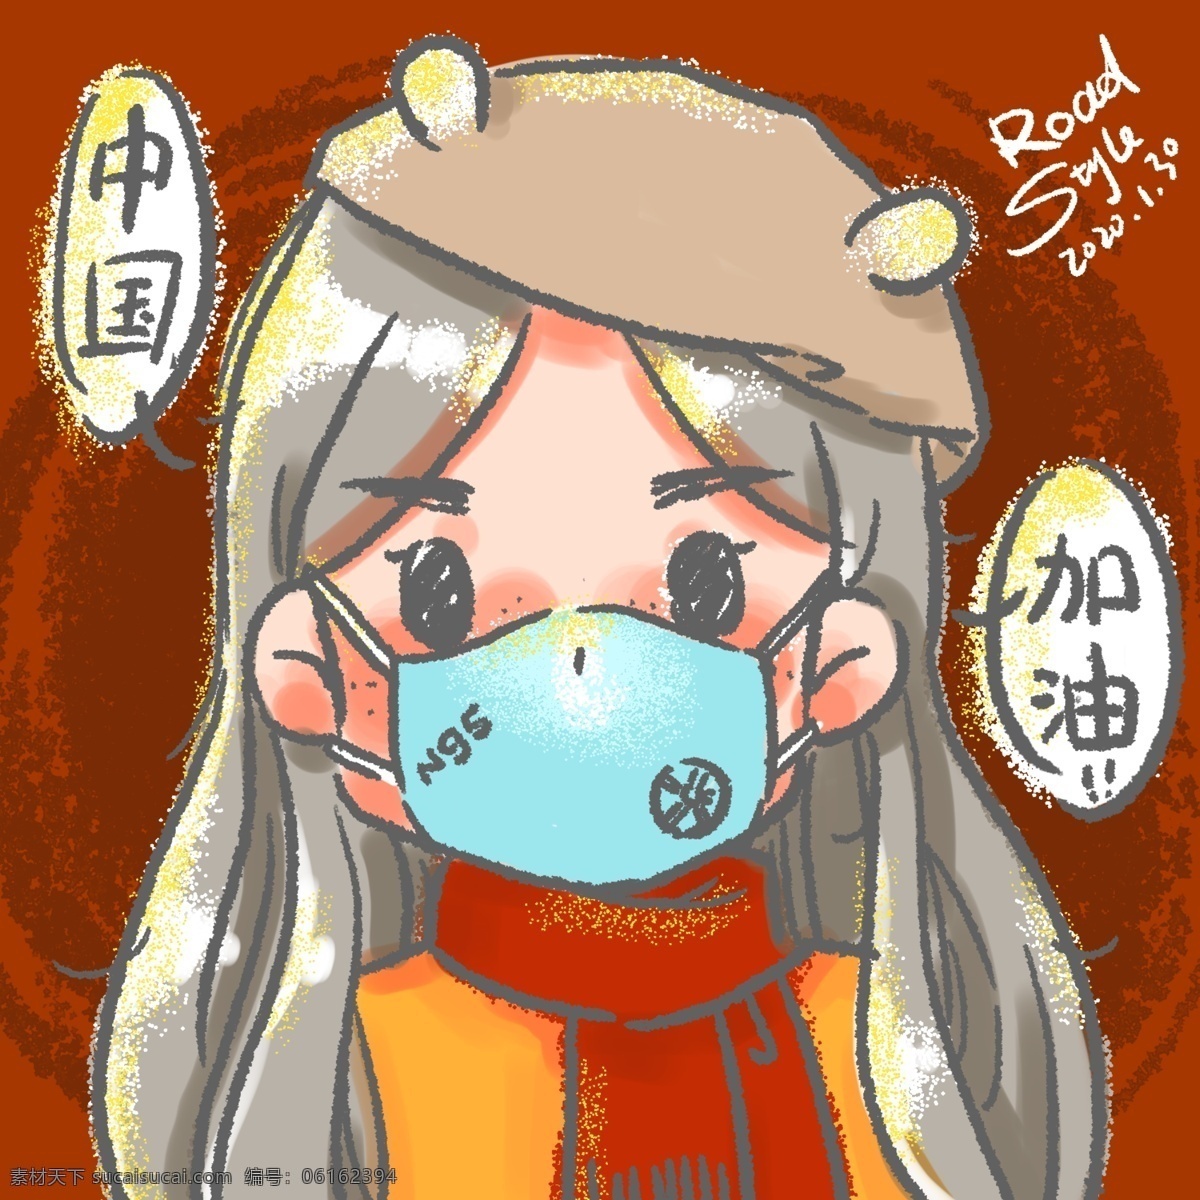 戴口罩 口罩 n95 病菌 卫生 感冒 流感 卡通女孩 手绘鼠绘作品 动漫动画 动漫人物